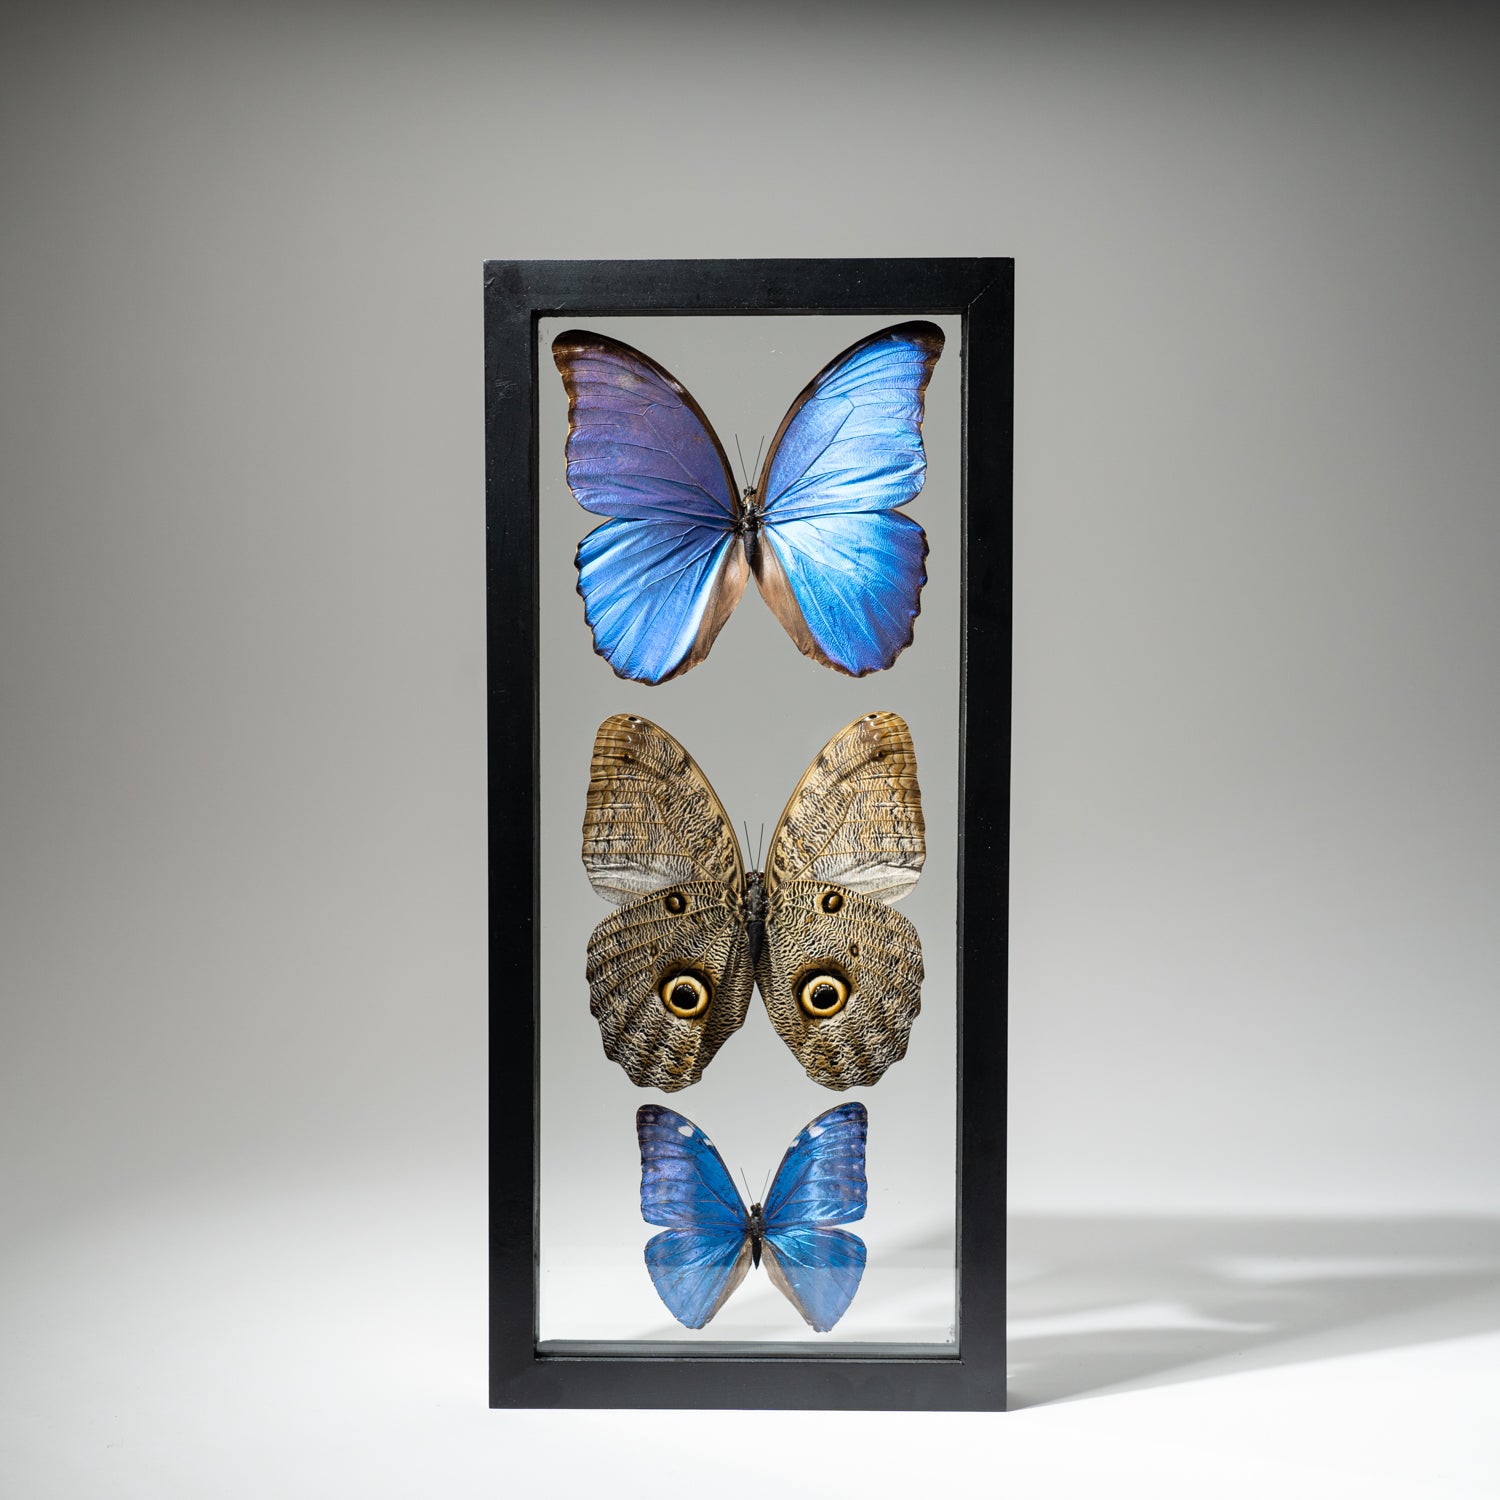 3 Large Genuine Butterflies in Black Display Frame- Morpho Didius, Morpho Marcus, Caligo Eurilochus